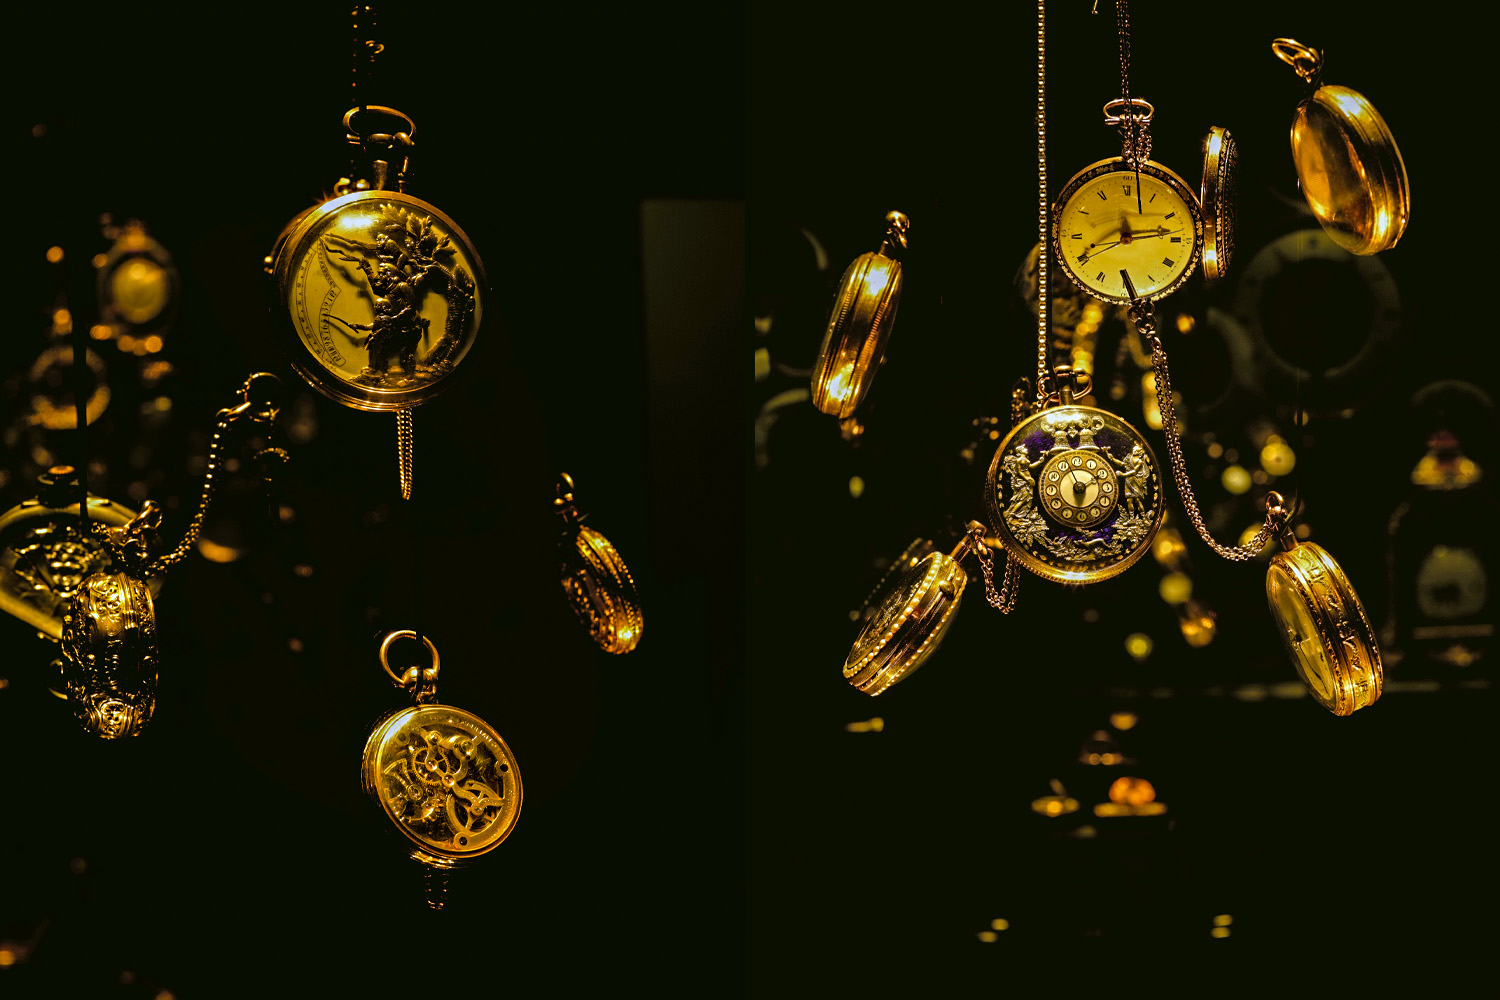 אוסף השעונים במוזיאון לאמנות האסלאם בירושלים. השלישי בחשיבותו בעולם (צילום: 
יורם אשהיים, באדיבות המוזיאון לאמנות האסלאם)